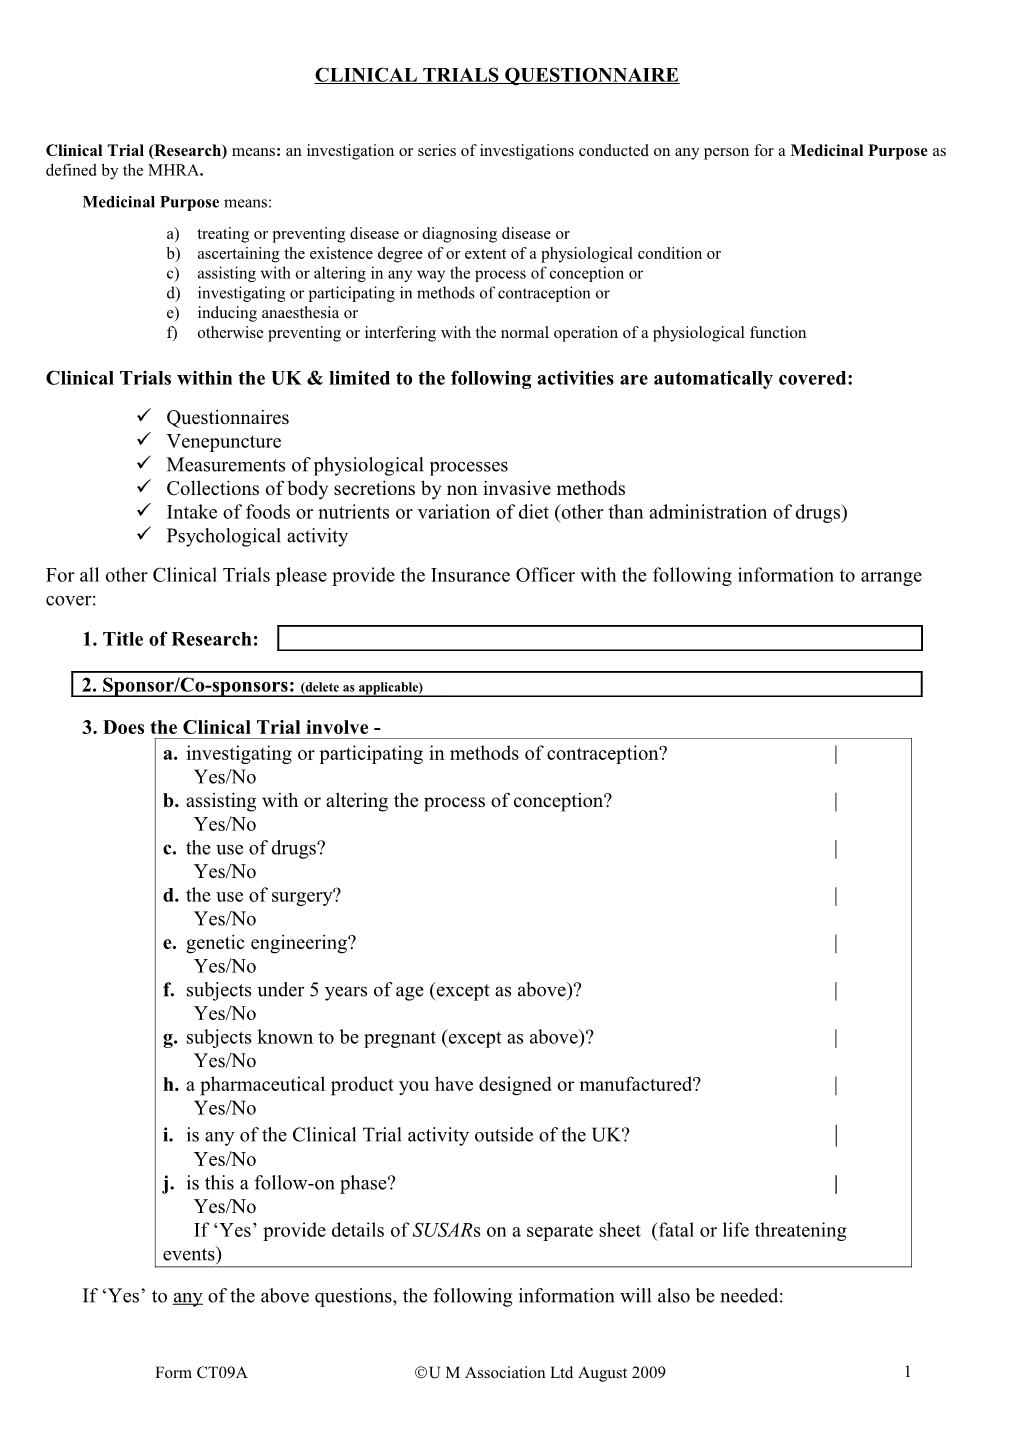 Clinical Trials Questionnaire